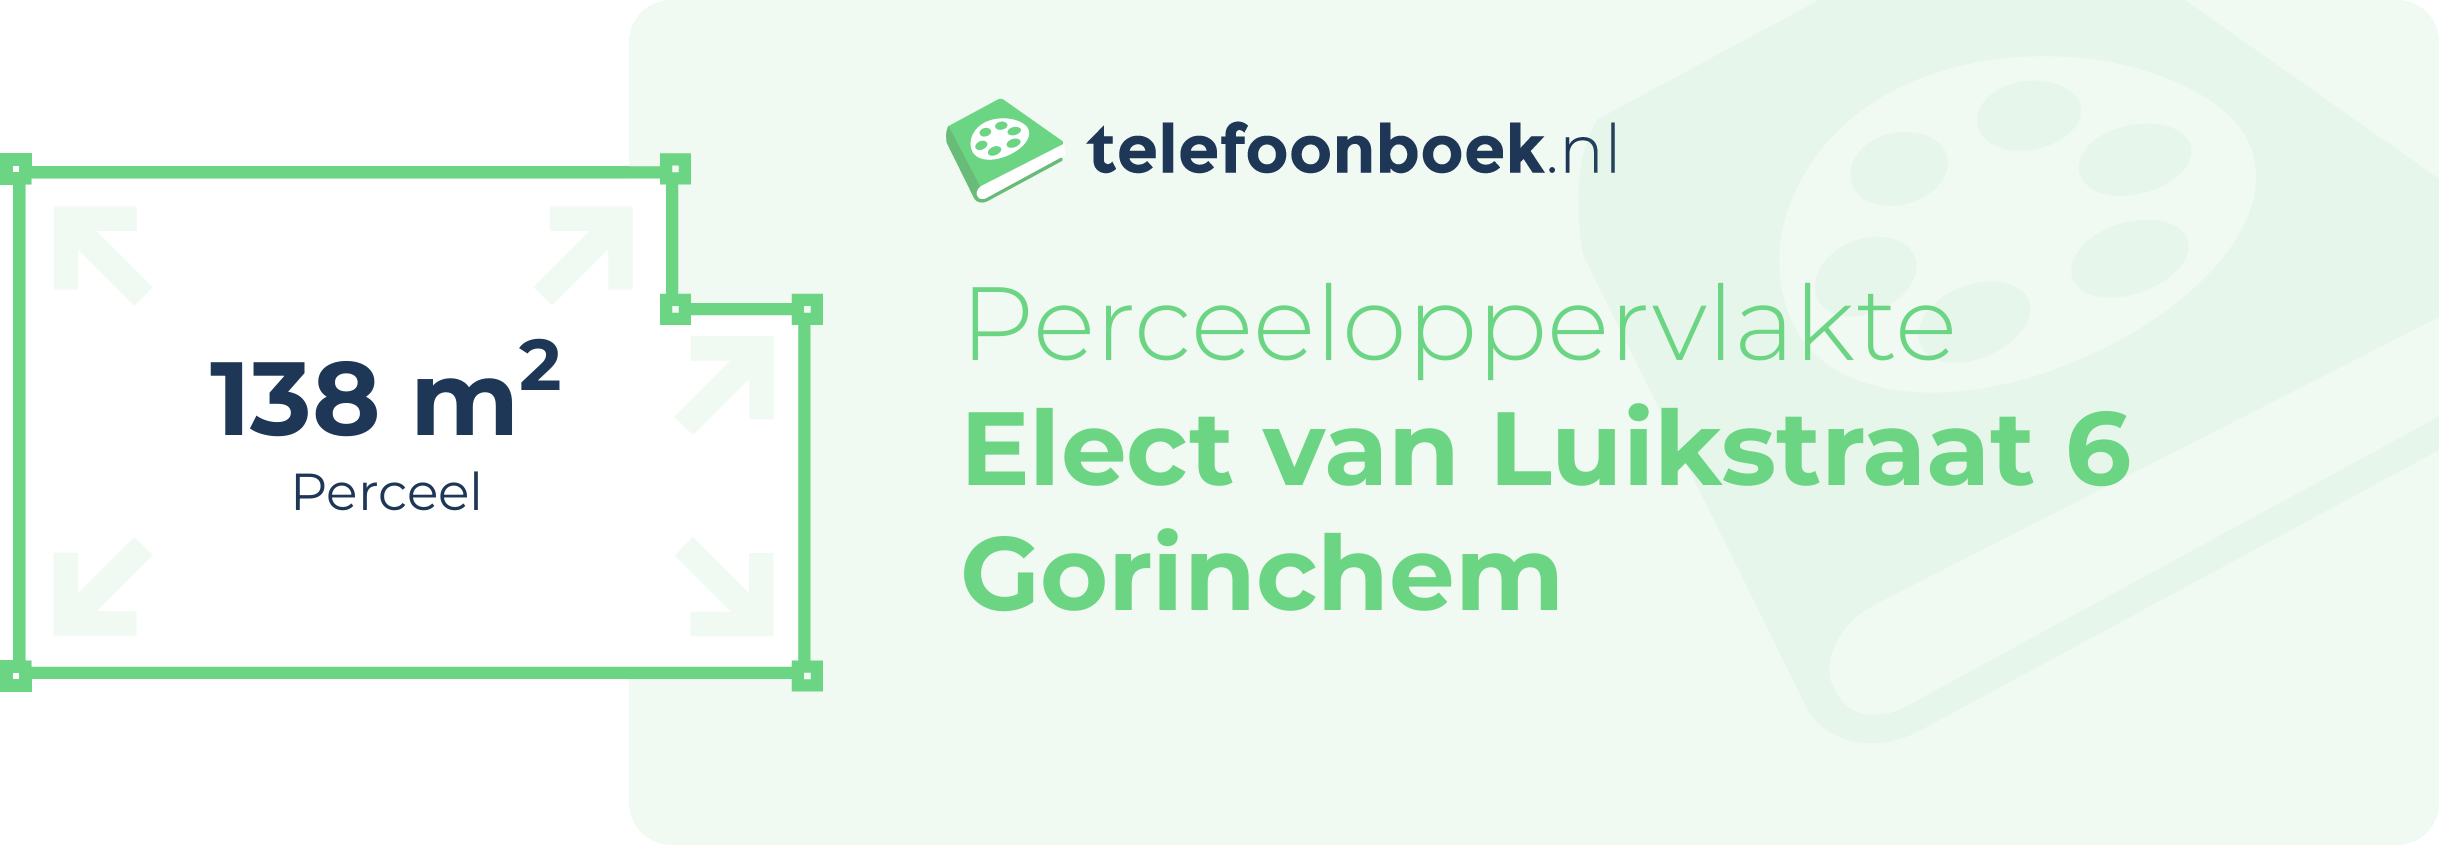 Perceeloppervlakte Elect Van Luikstraat 6 Gorinchem